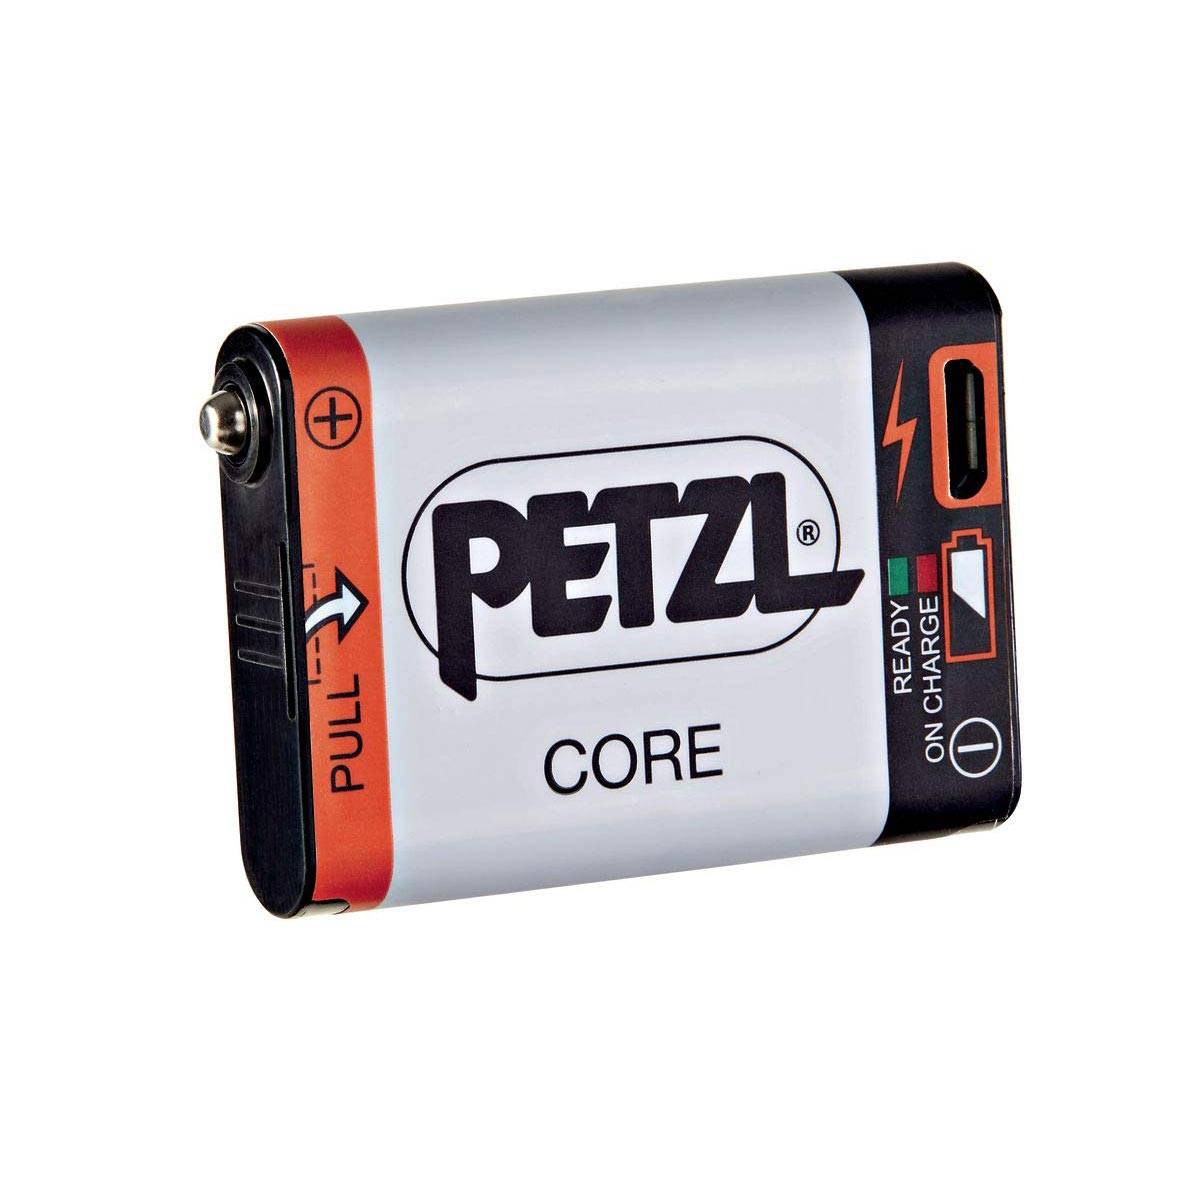 Petzl CORE Rechargeable Battery (Black)